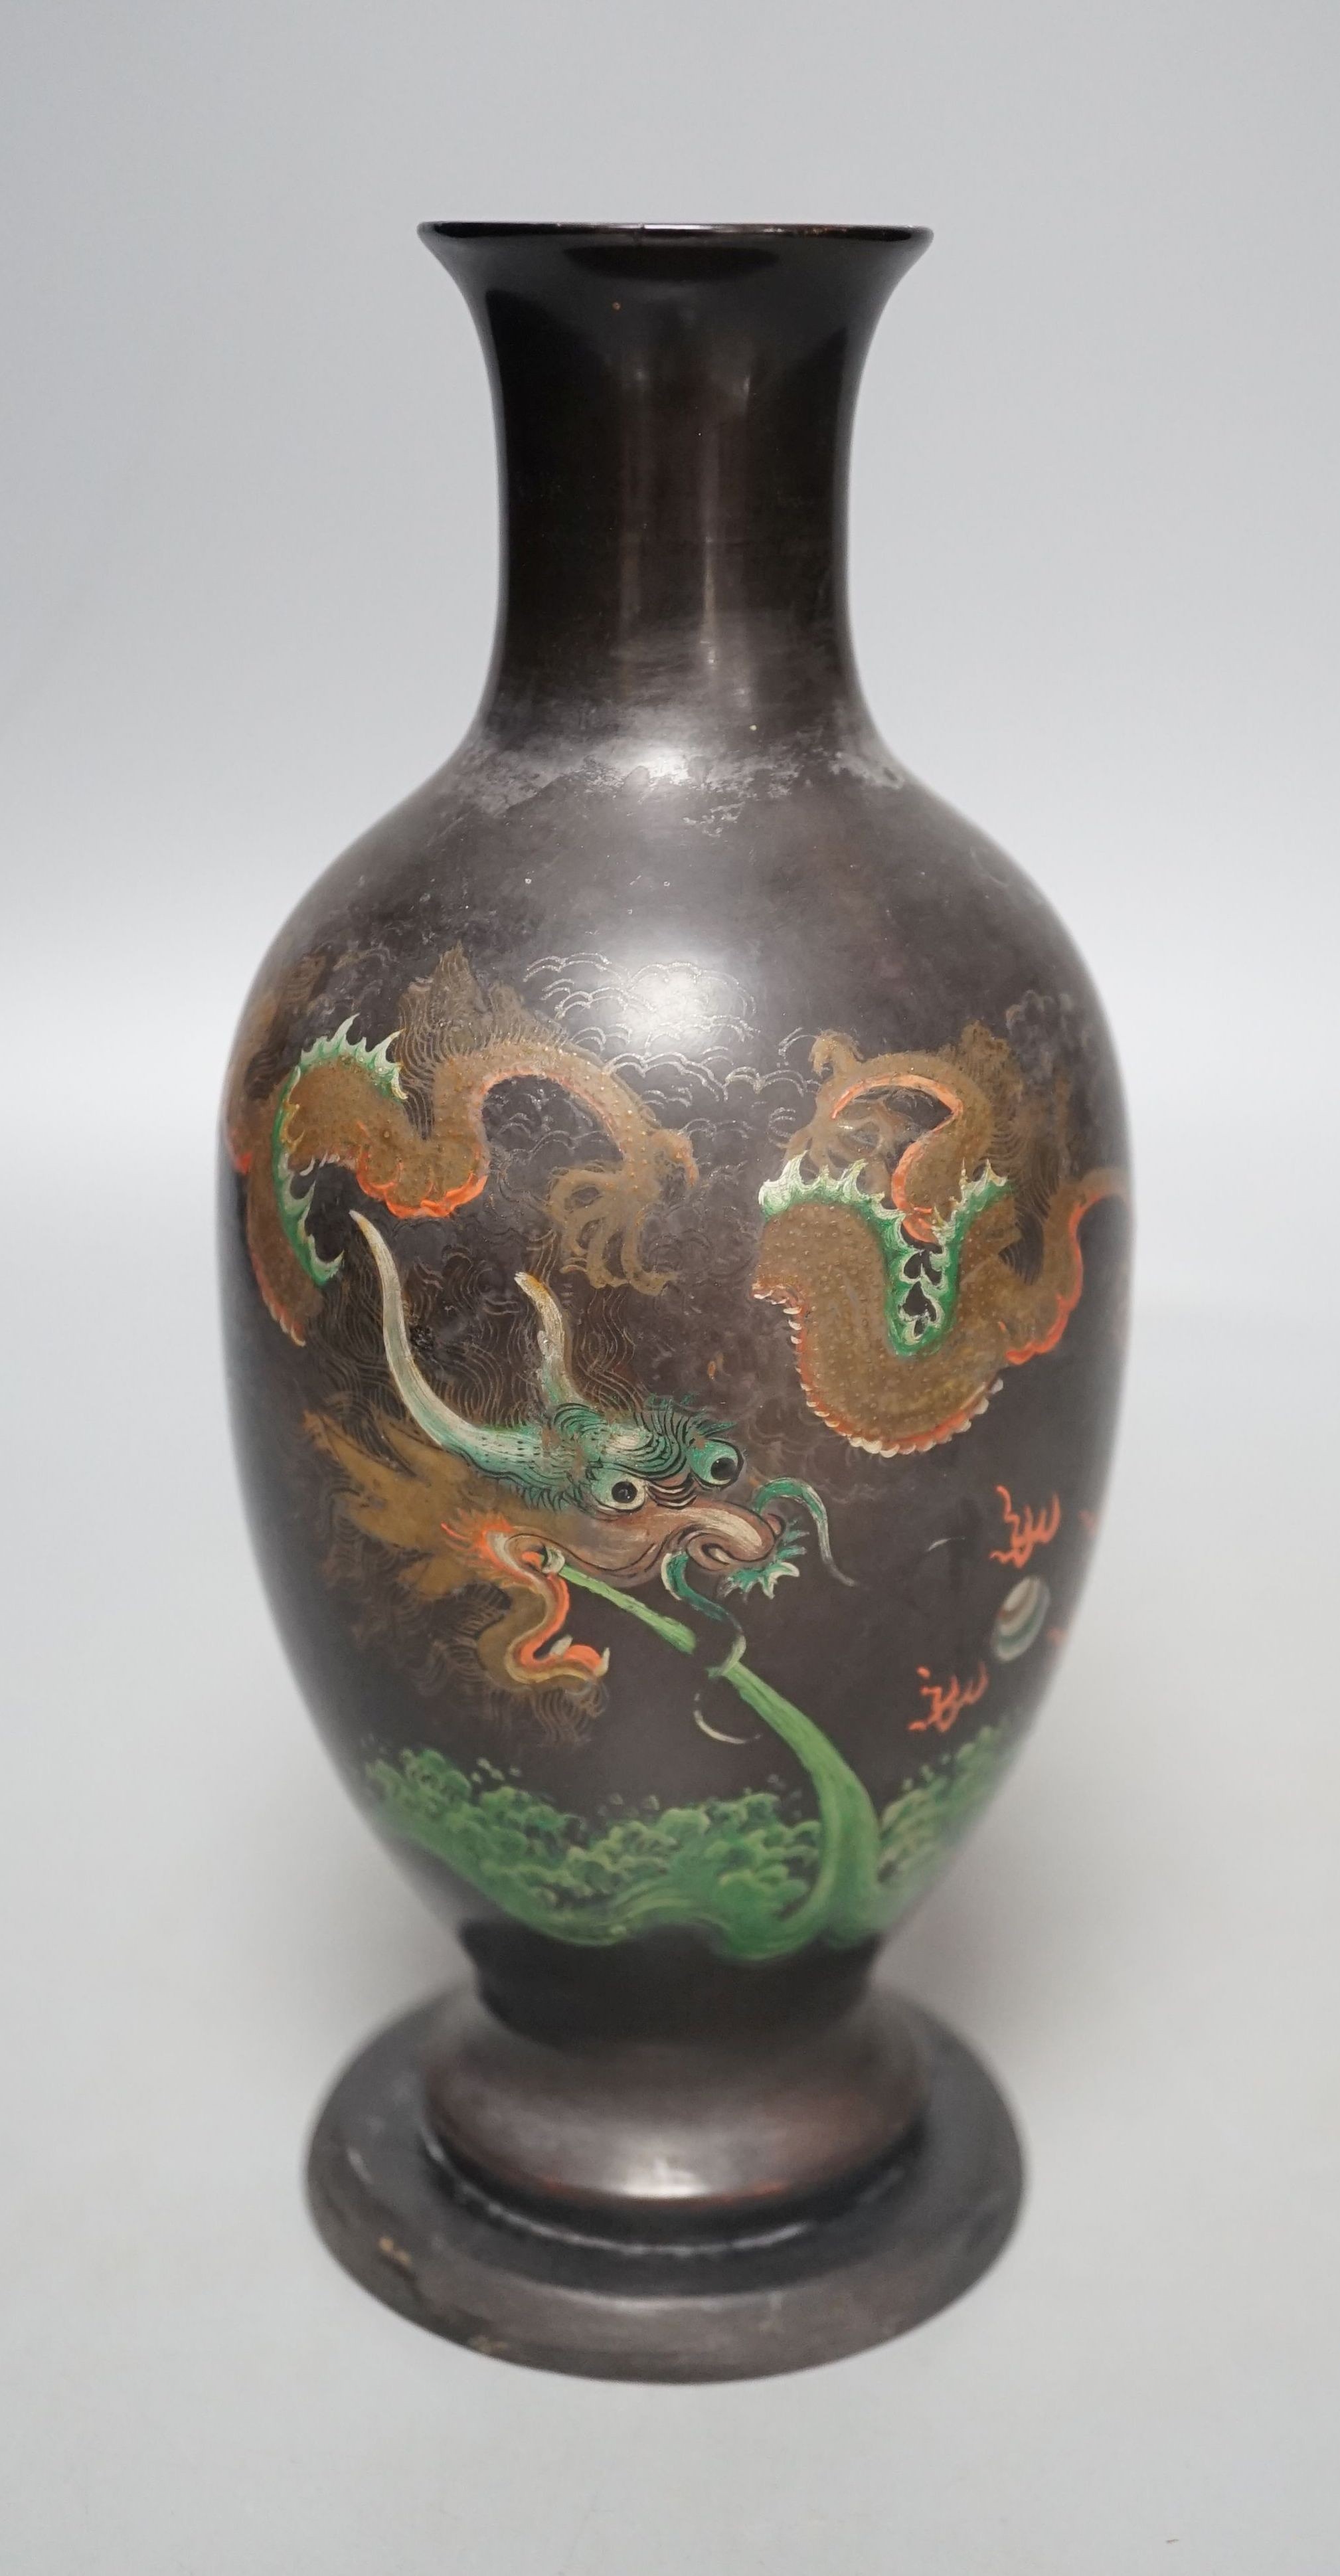 A Chinese Fuzhou lacquer papier-mâché dragon design vase, 20.5 cms high.